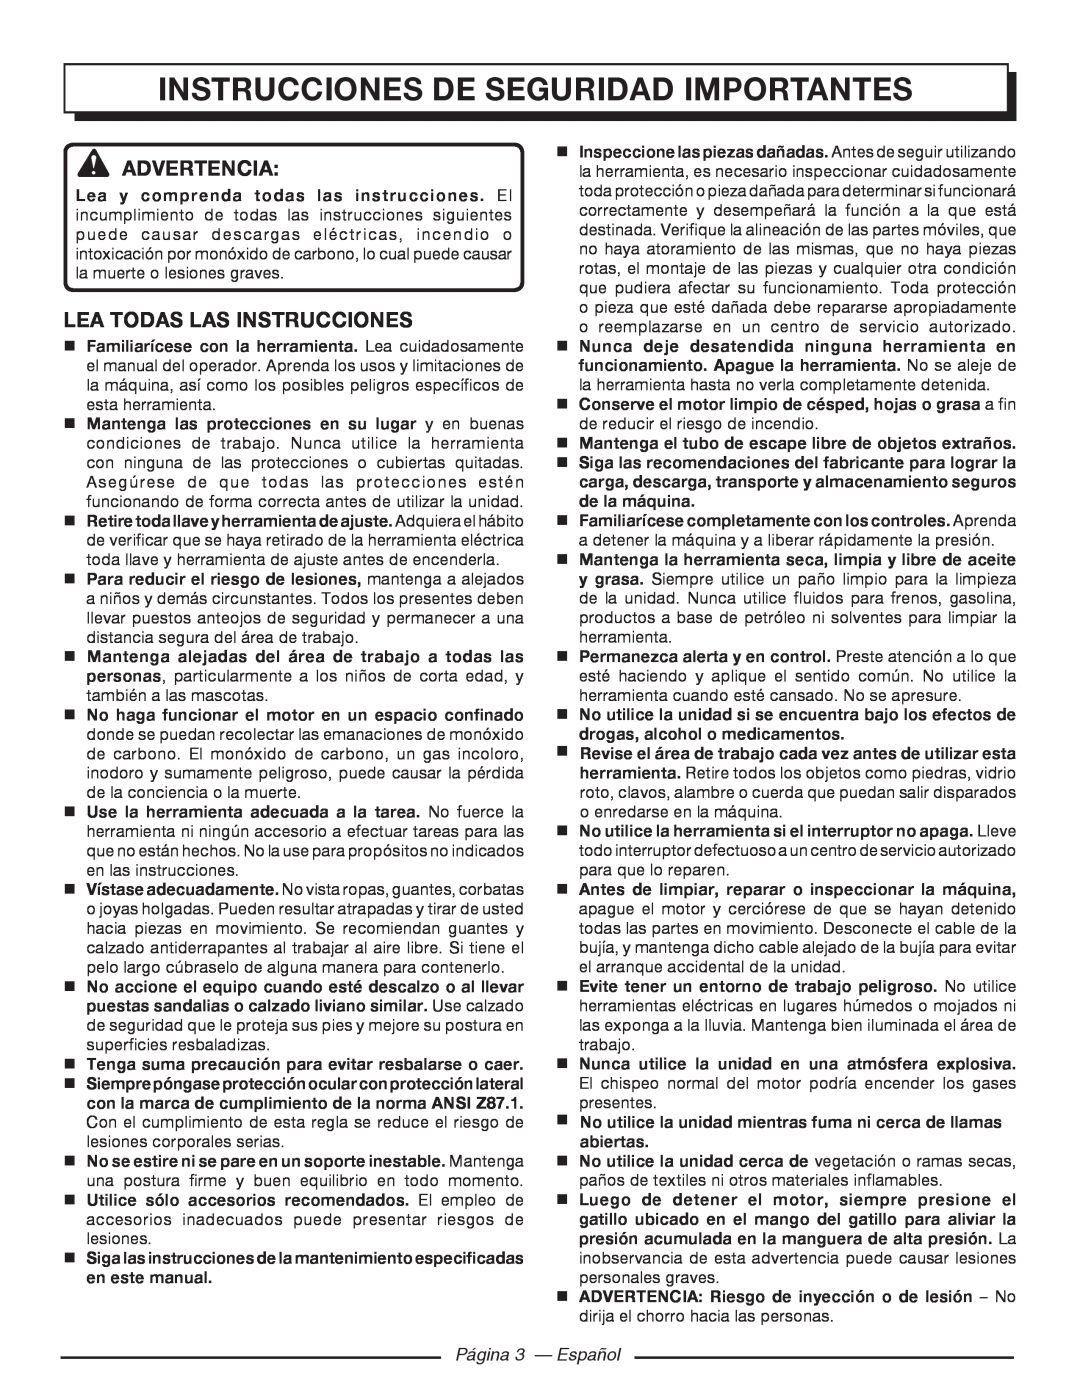 Homelite UT80993 Instrucciones De Seguridad Importantes, Advertencia, Lea Todas Las Instrucciones, Página 3 - Español 